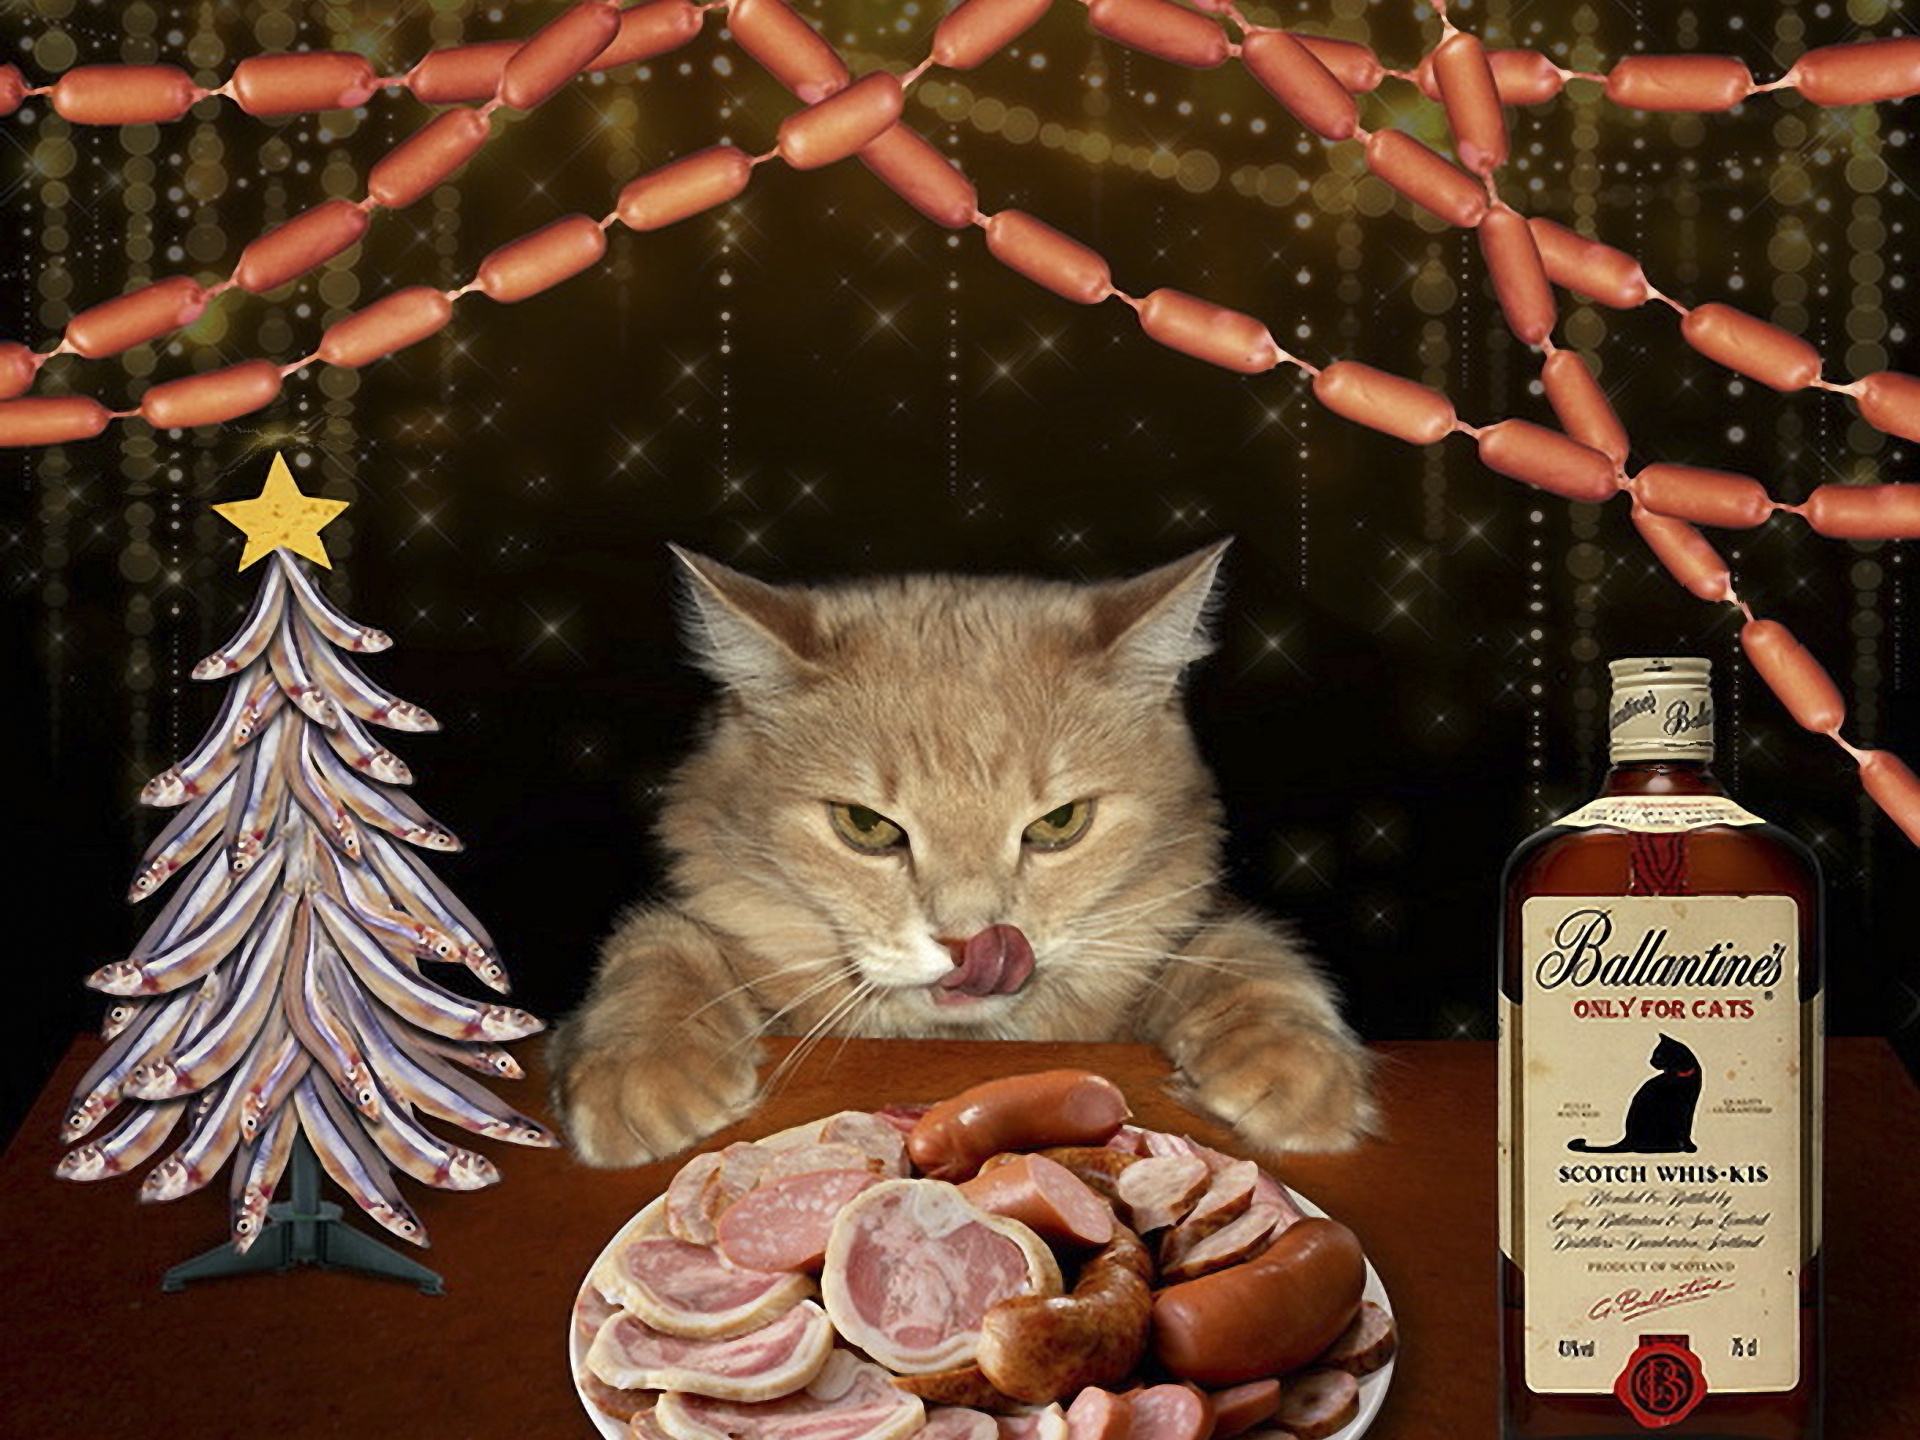 3d обои Кошачий новый год, тарелка с копченостями и сосисками, елка из рыбёшек, сосисочная гирлянда и кошачий скотч вис-кис (Bаllantines only for cats scotch whis-kis)  прикольные # 70837